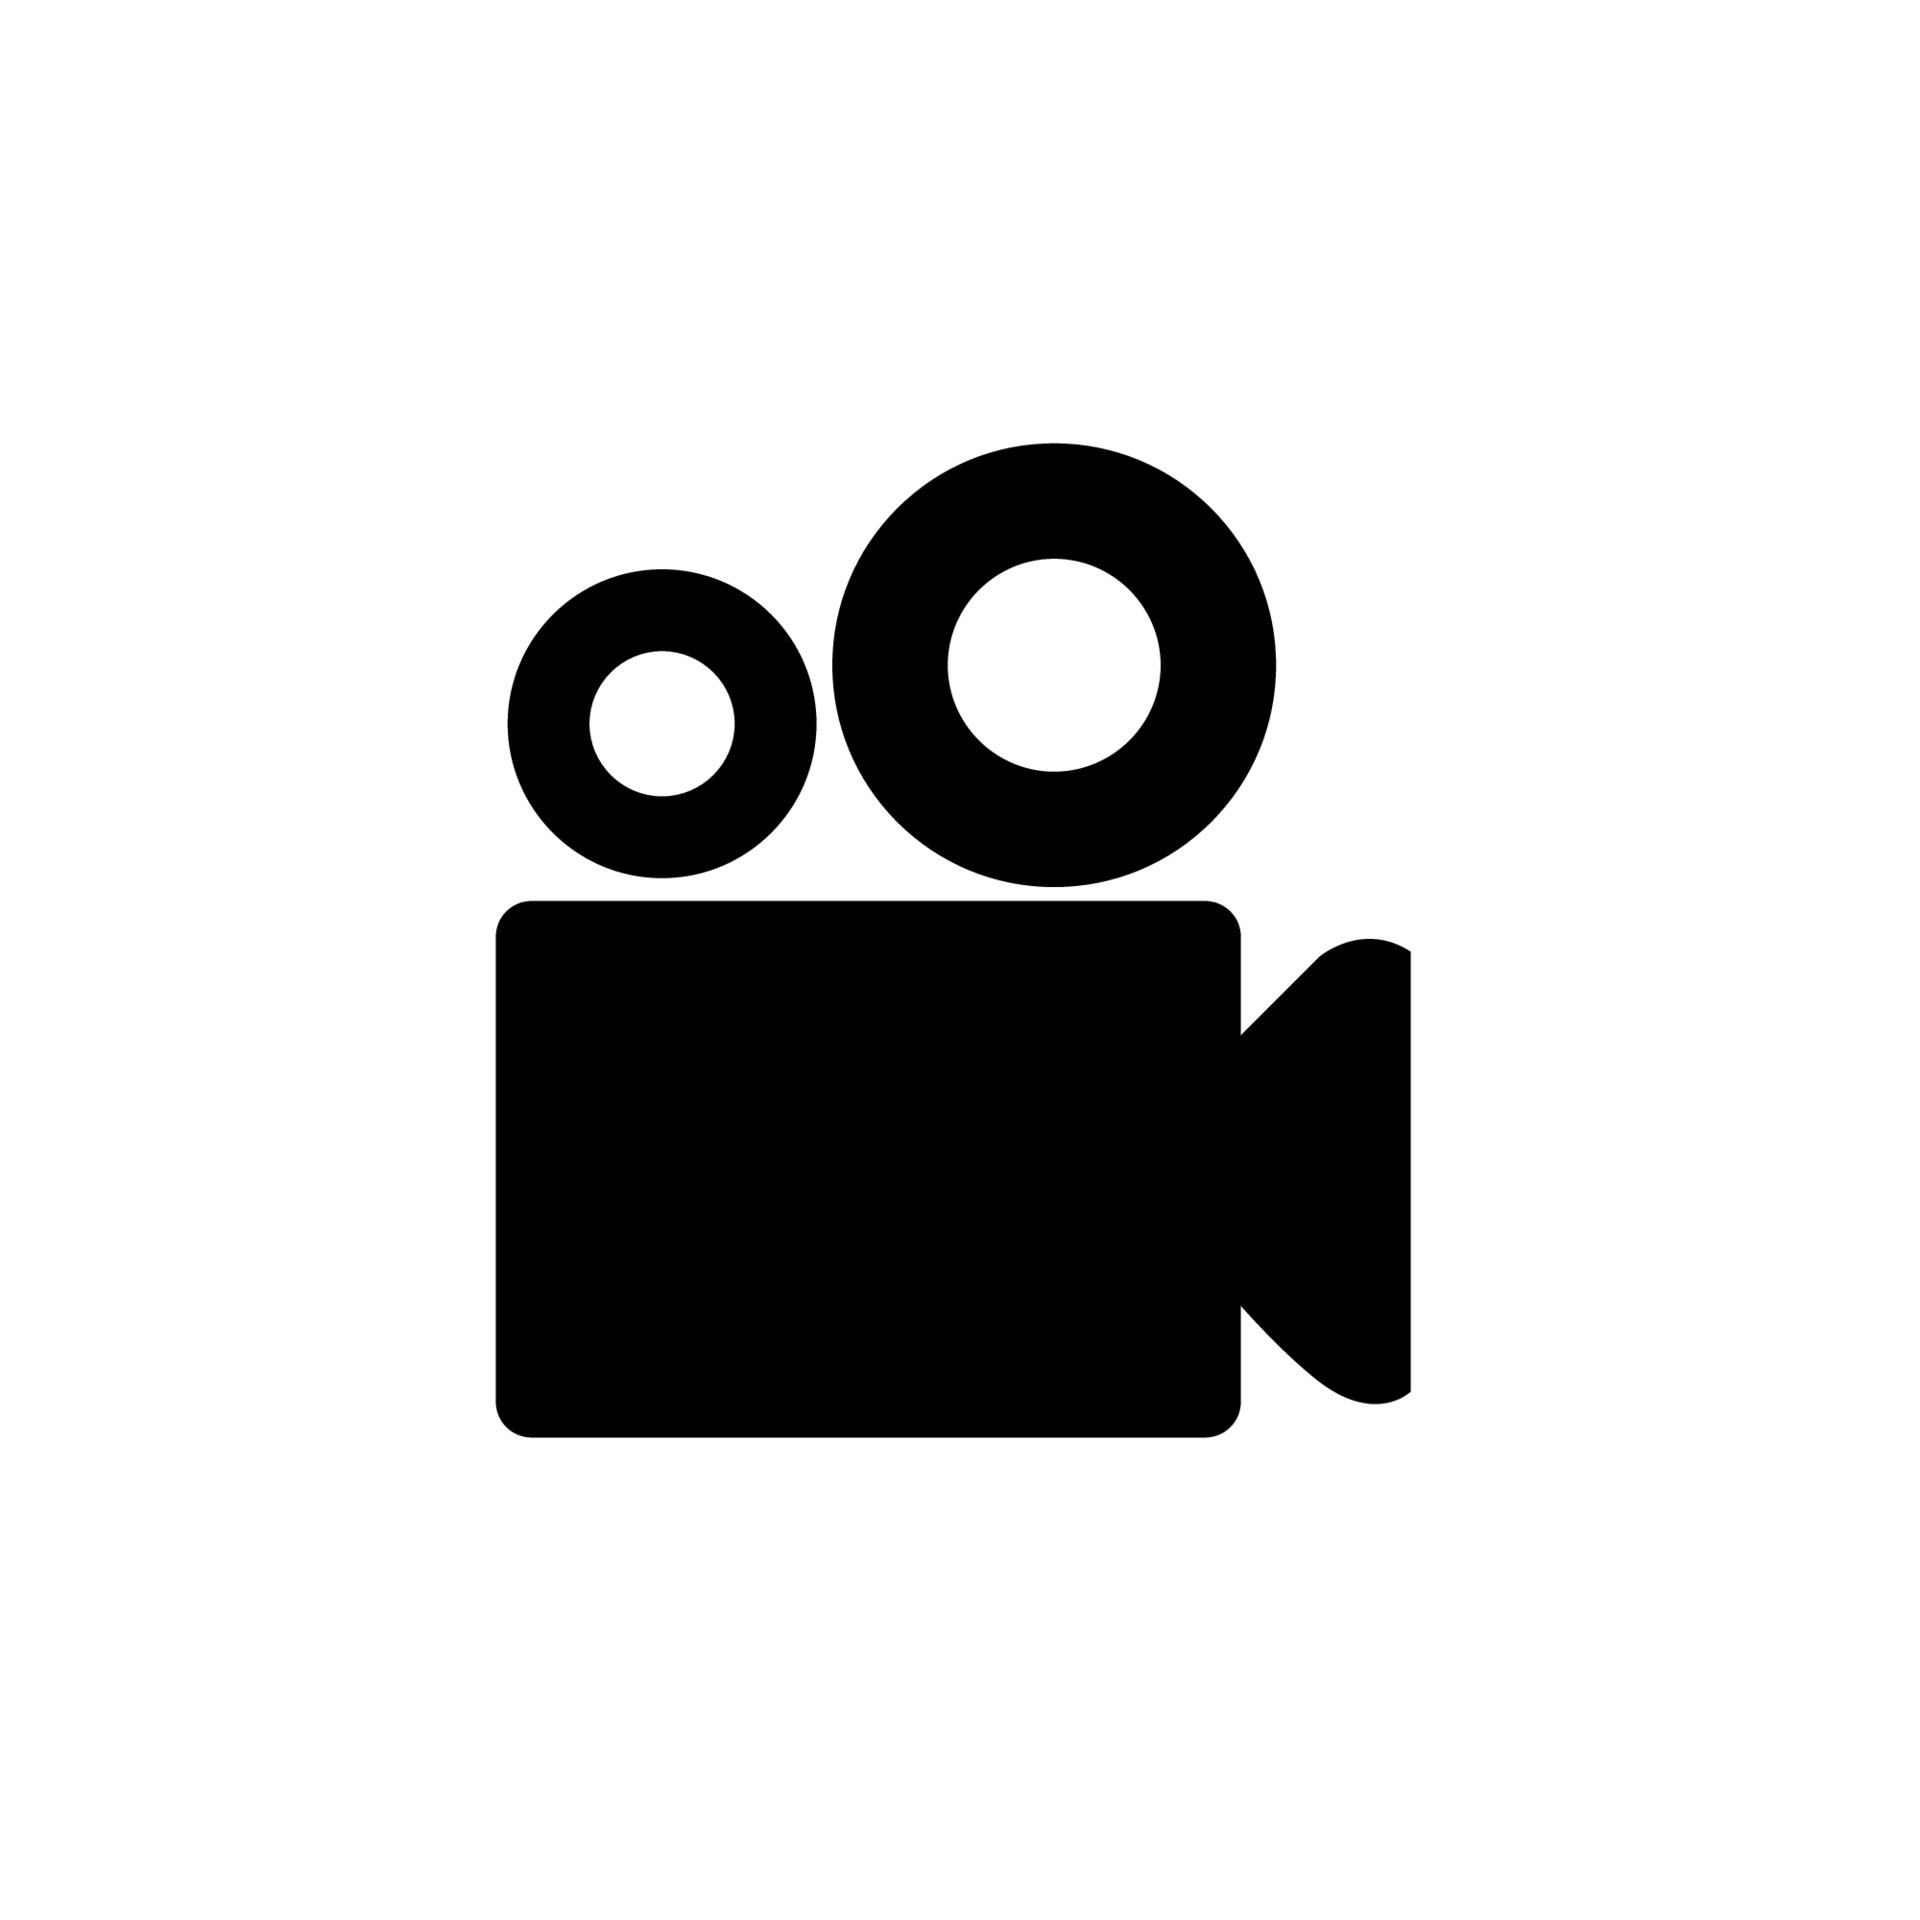 Ярлык камеры. Значок камеры. Видеокамера логотип. Видеокамера черно белая. Видеокамера пиктограмма.